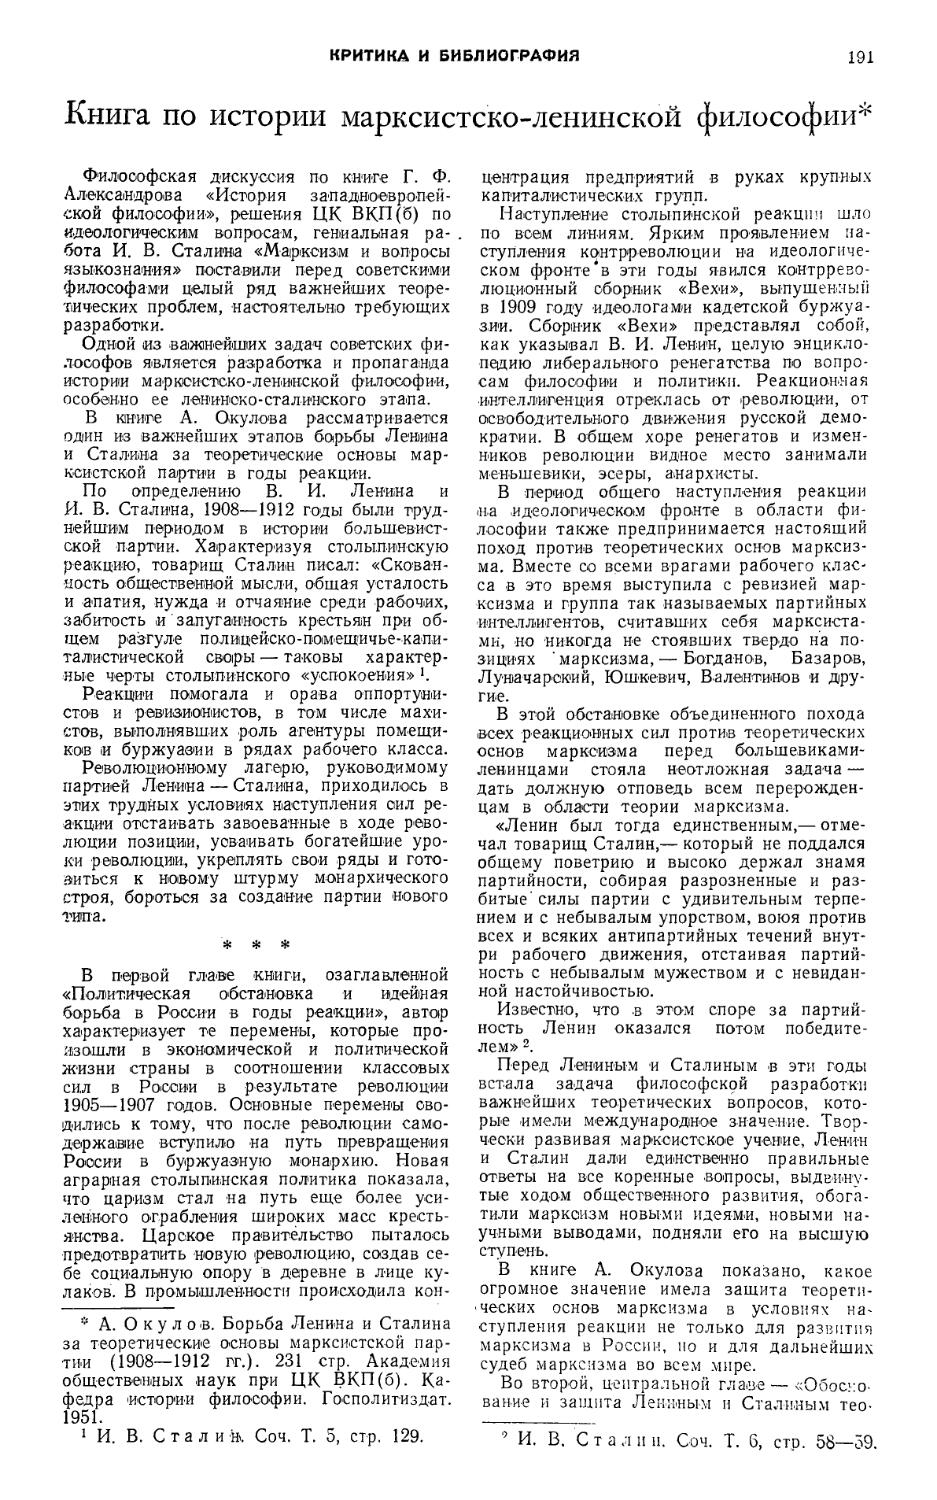 В.М.Каирян, В.Г.Семенов — Книга по истории марксистско-ленинской философии